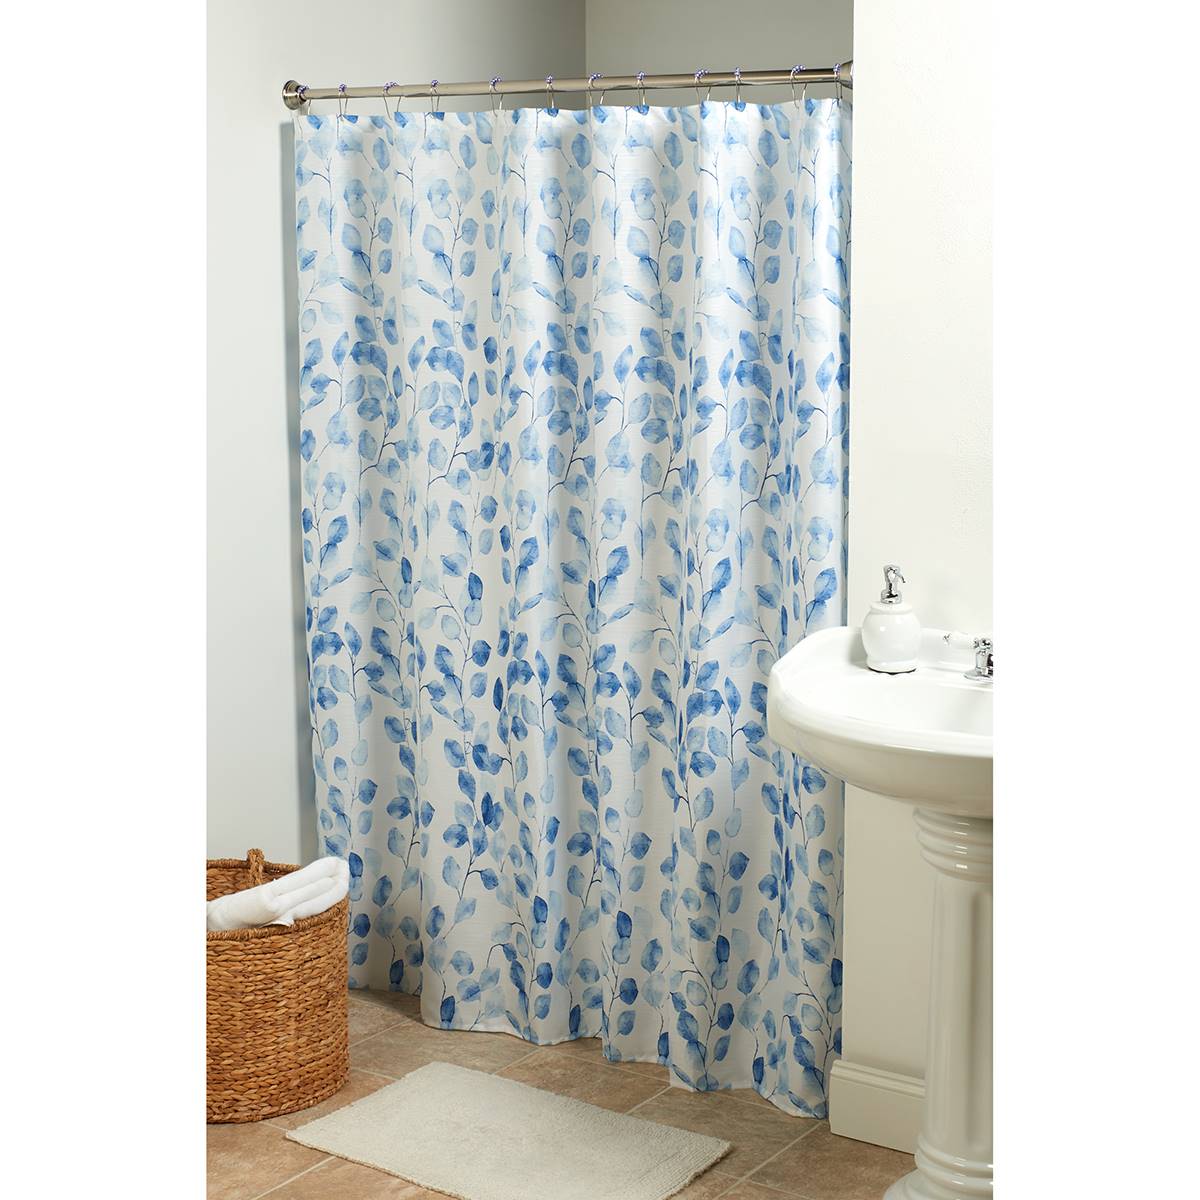 Shower Curtain Hook Liner - Navy